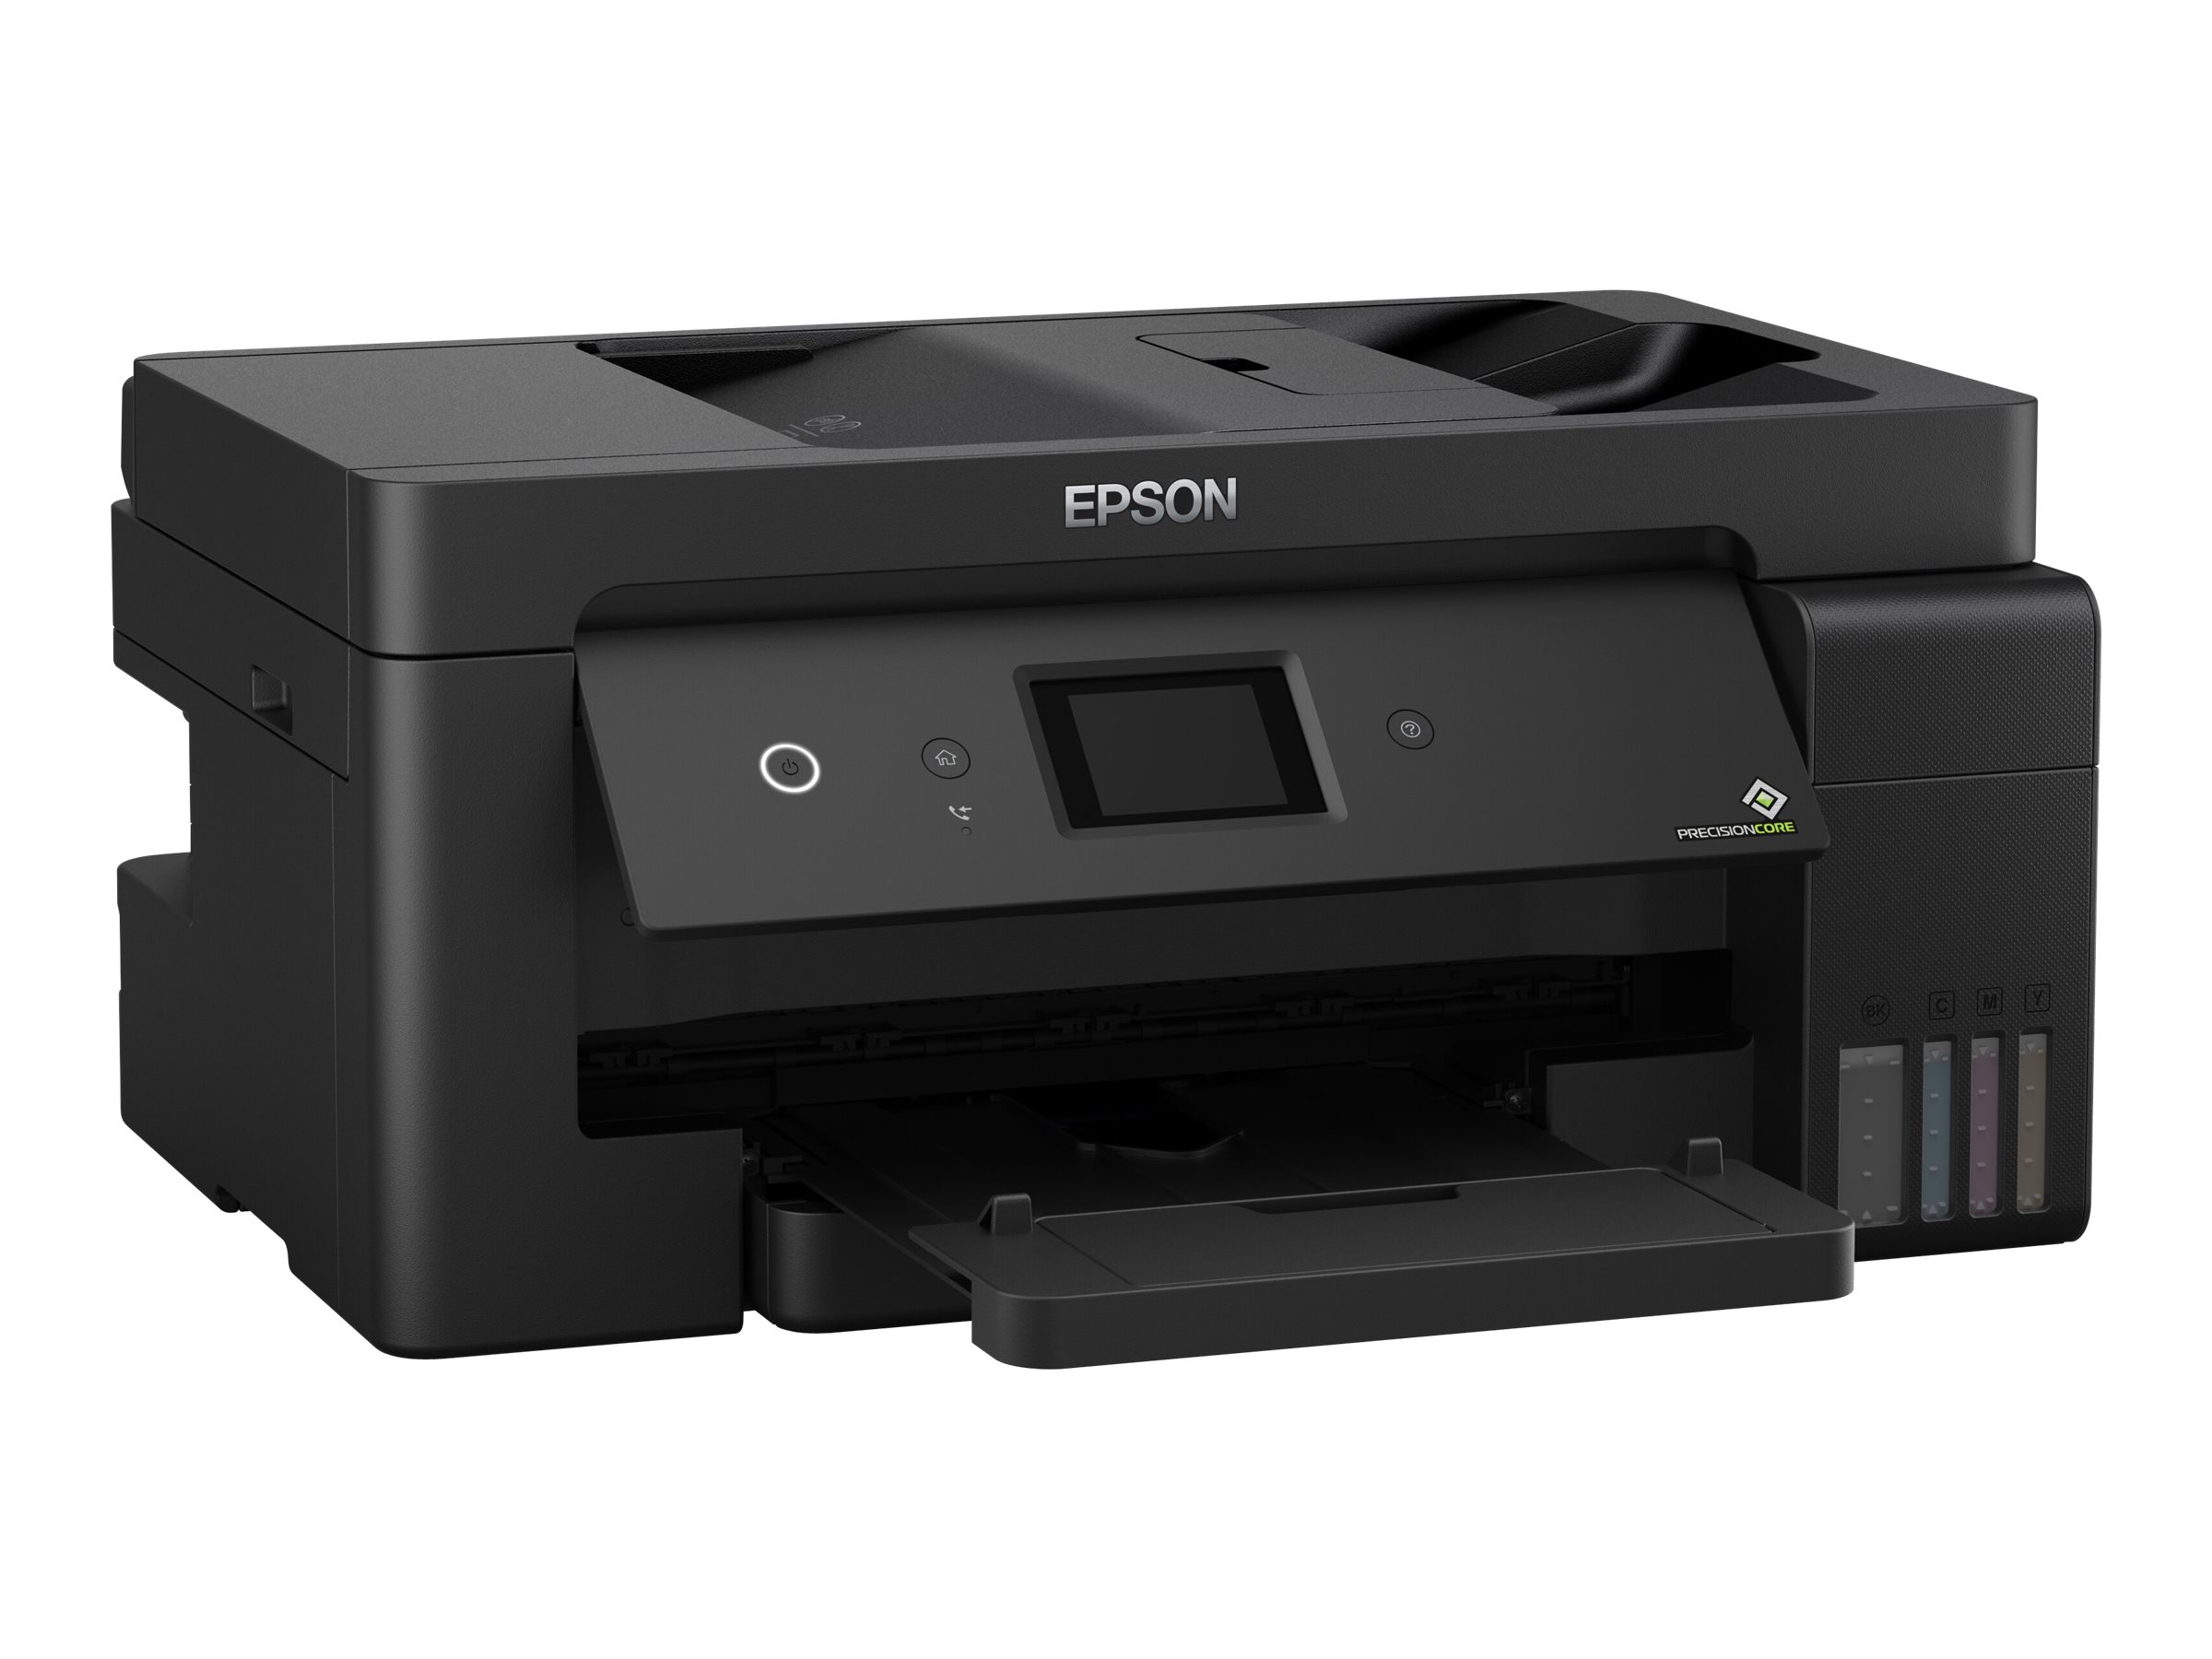 Epson EcoTank ET-15000 - Imprimante multifonctions - couleur - jet d'encre - A3/Ledger (297 x 432 mm) (original) - A3/Ledger (support) - jusqu'à 11.5 ppm (copie) - jusqu'à 17 ppm (impression) - 270 feuilles - 33.6 Kbits/s - USB 2.0, LAN, Wi-Fi - C11CH96401 - Imprimantes multifonctions